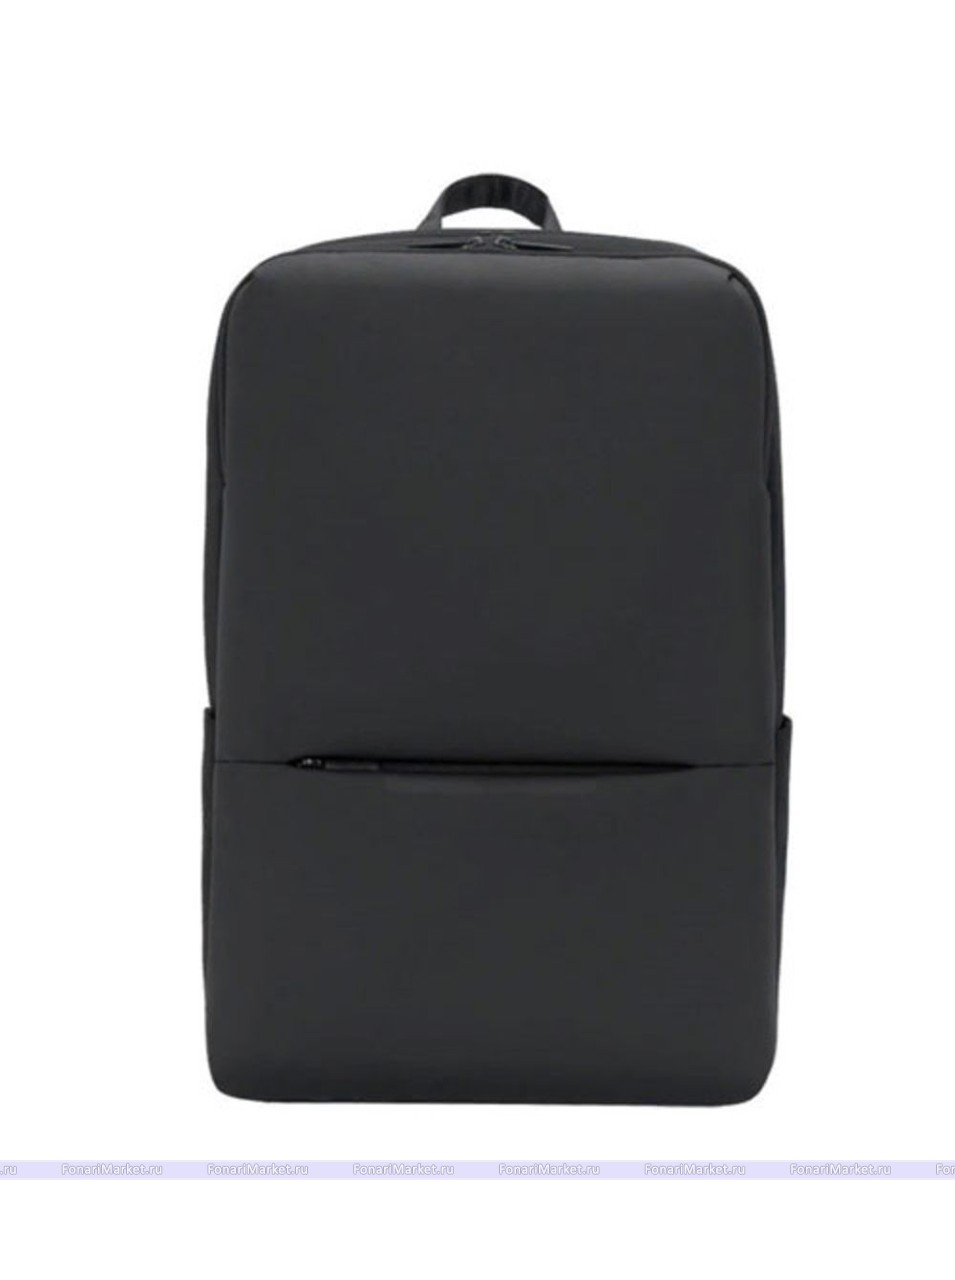 Рюкзаки Xiaomi - Рюкзак Xiaomi Classic Business Backpack 2